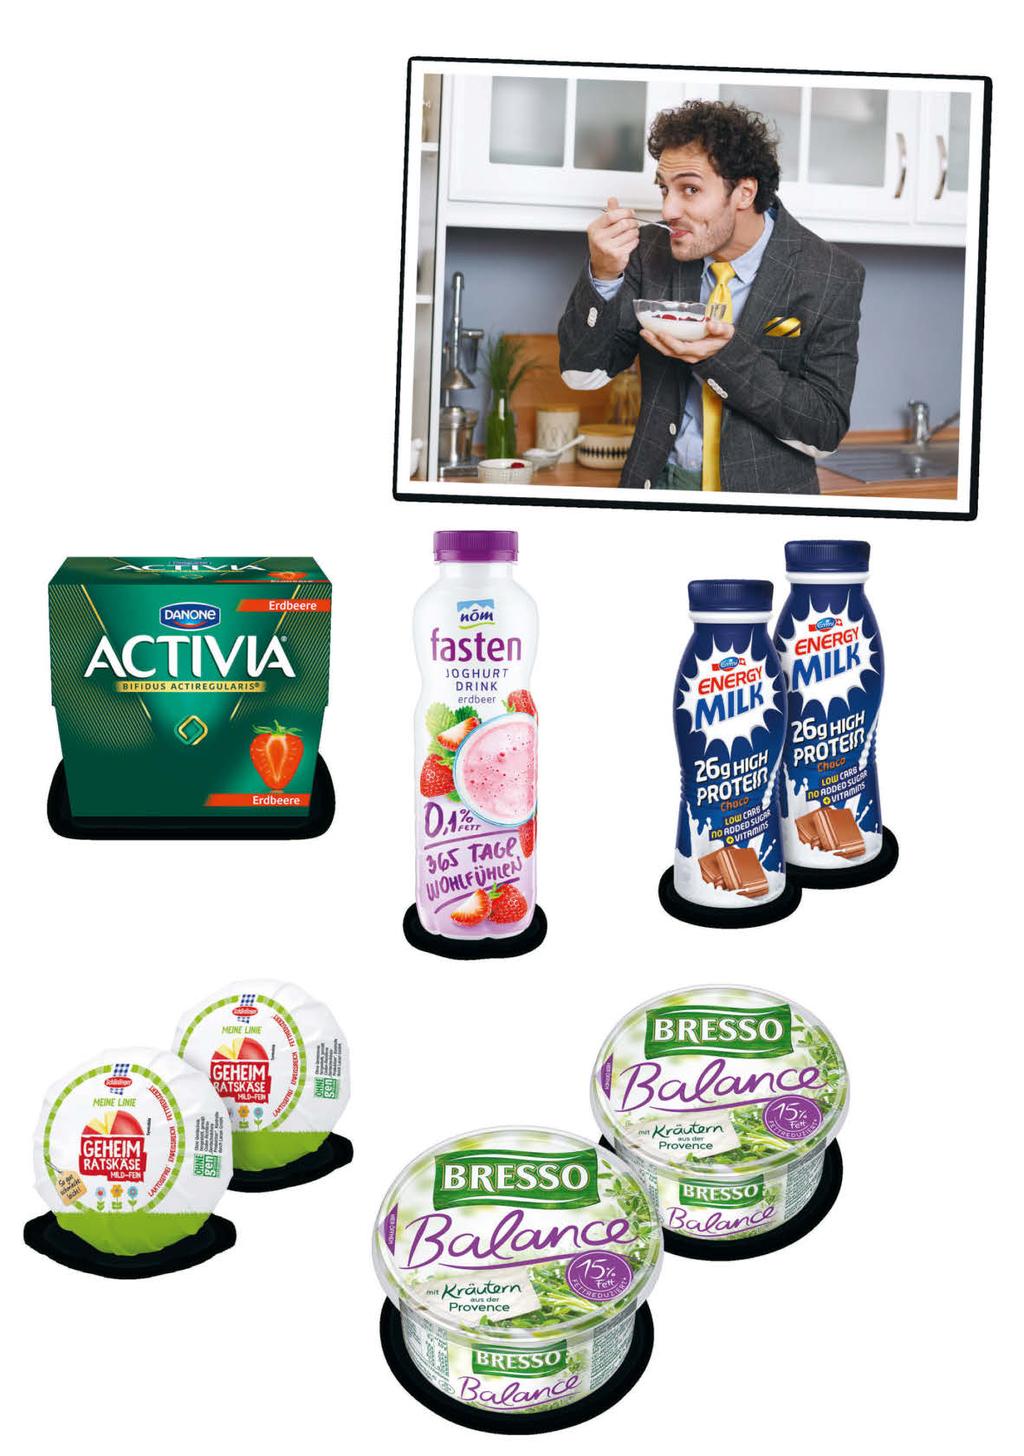 FRANZ Nöm Fasten Joghurtdrink 500 ml Emmi Energy Milk High Protein